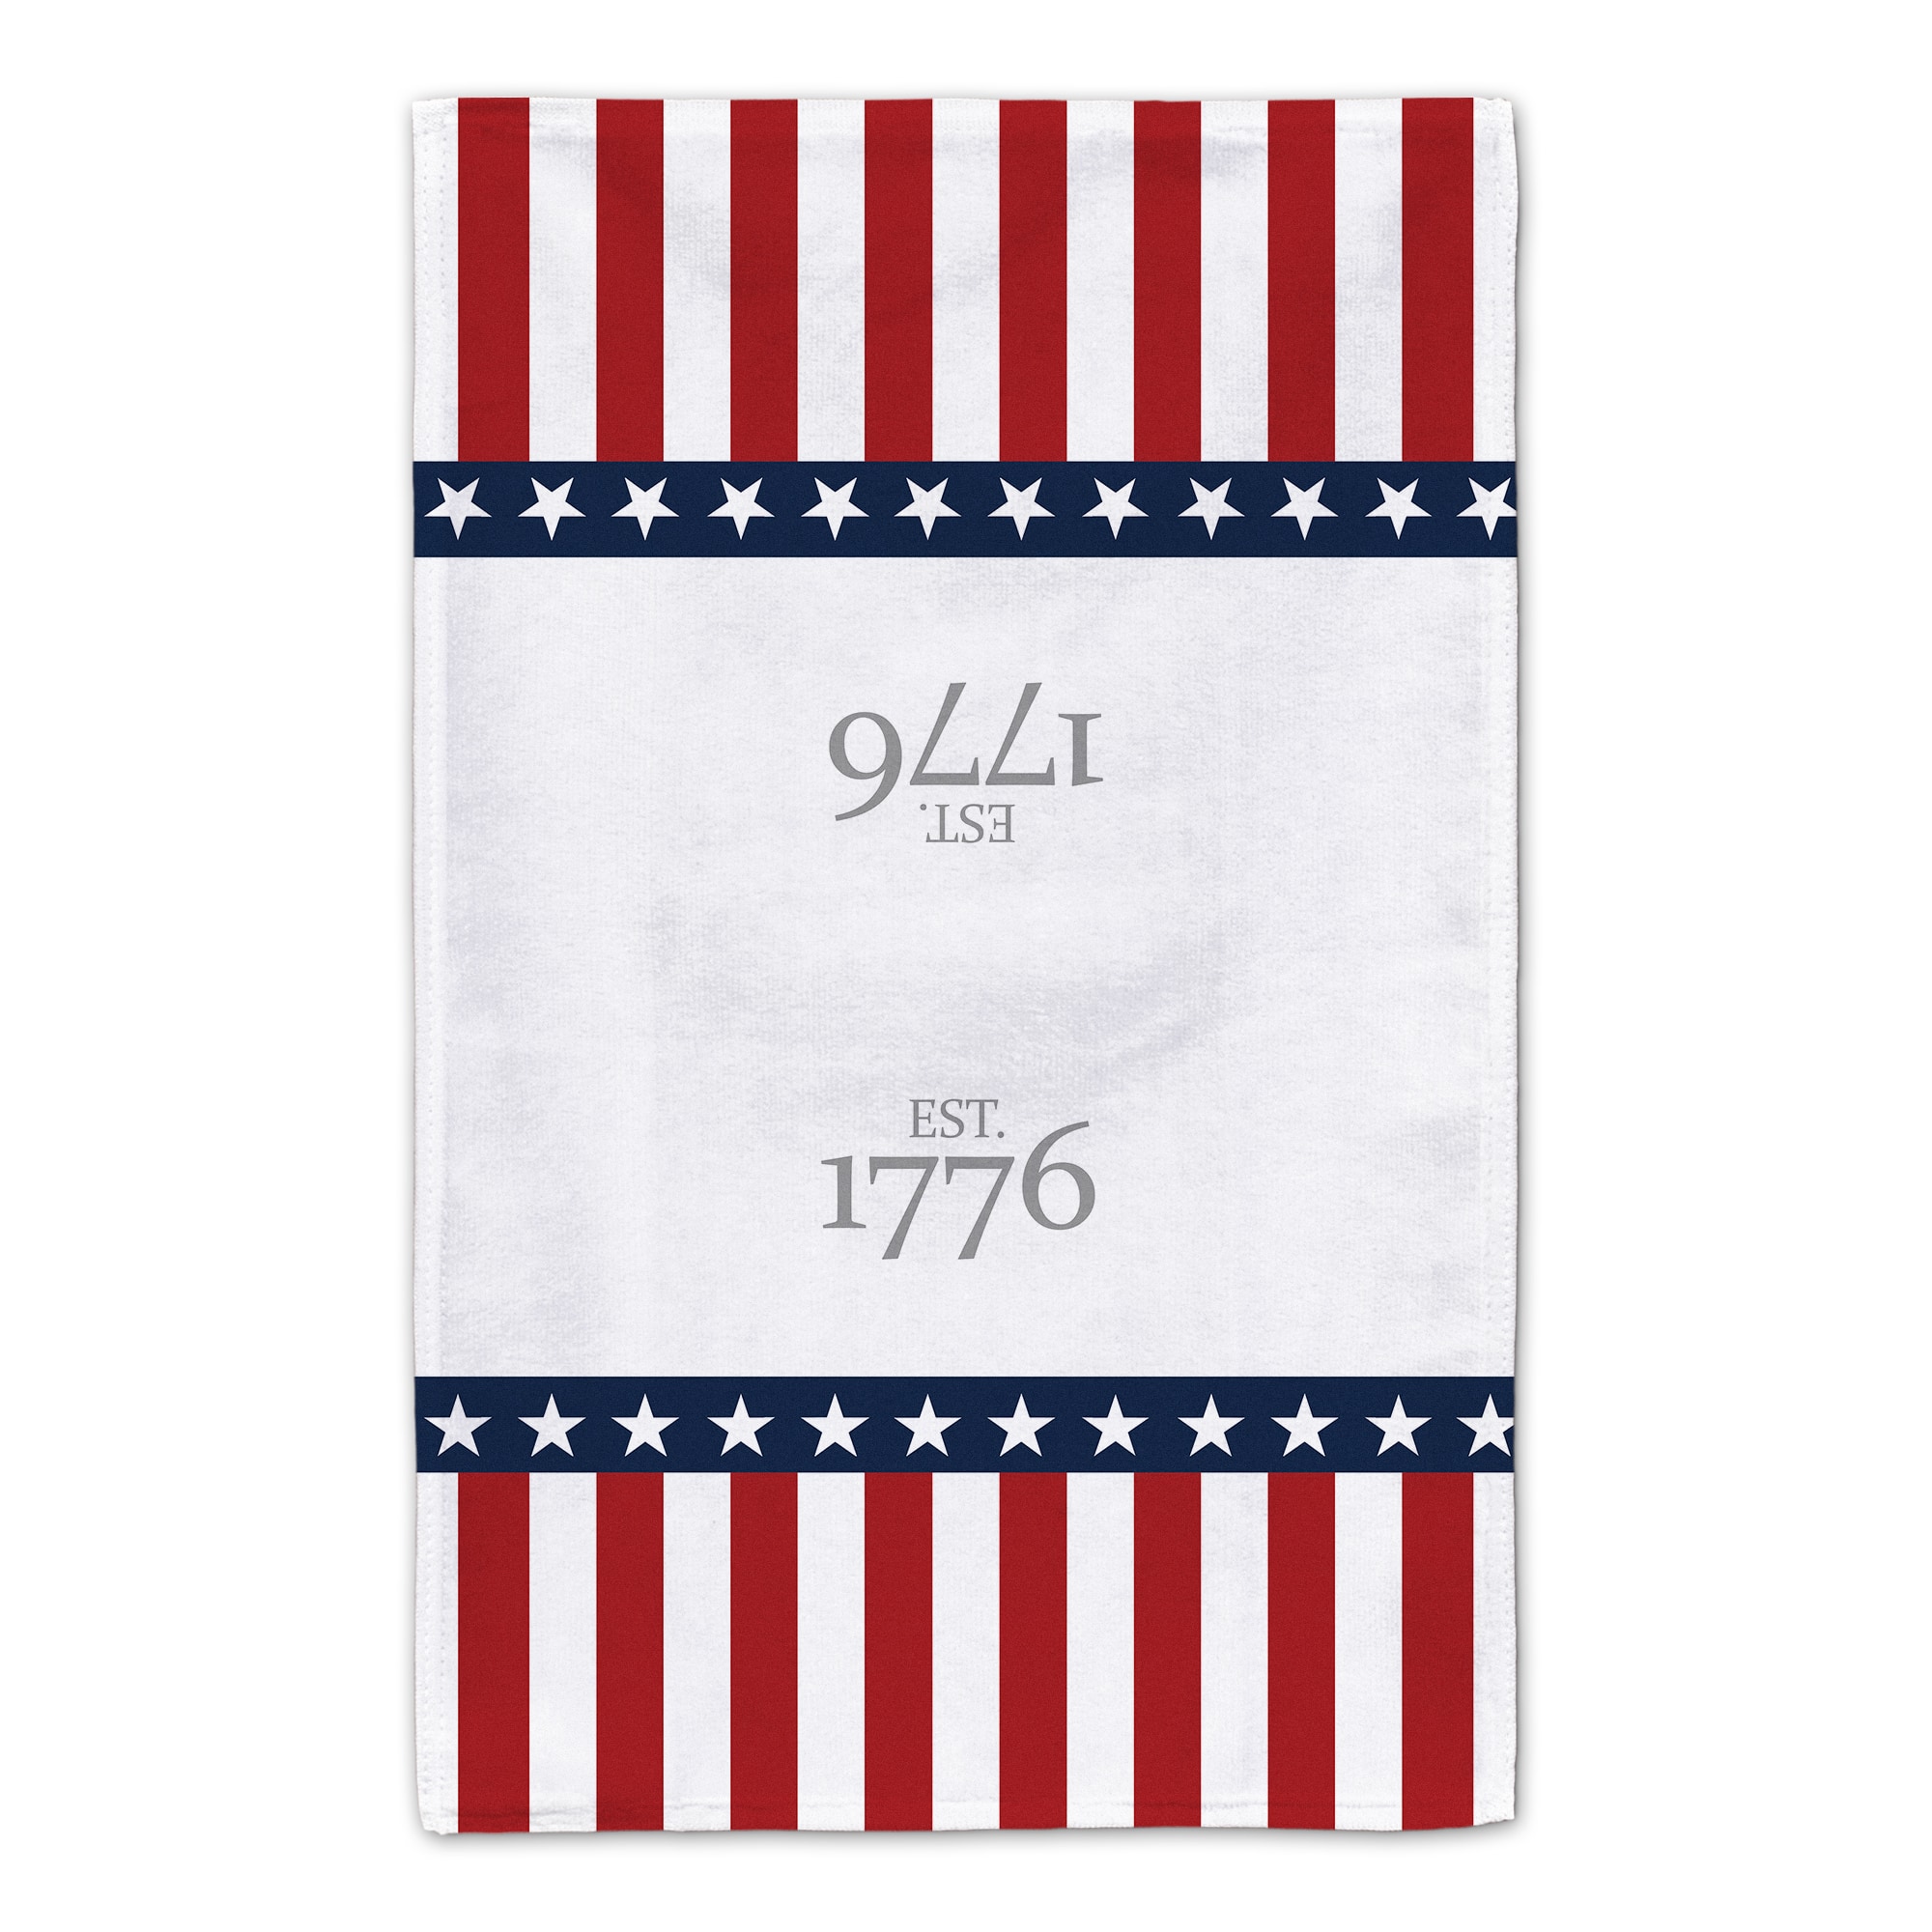 Est. 1776 Tea Towel Set